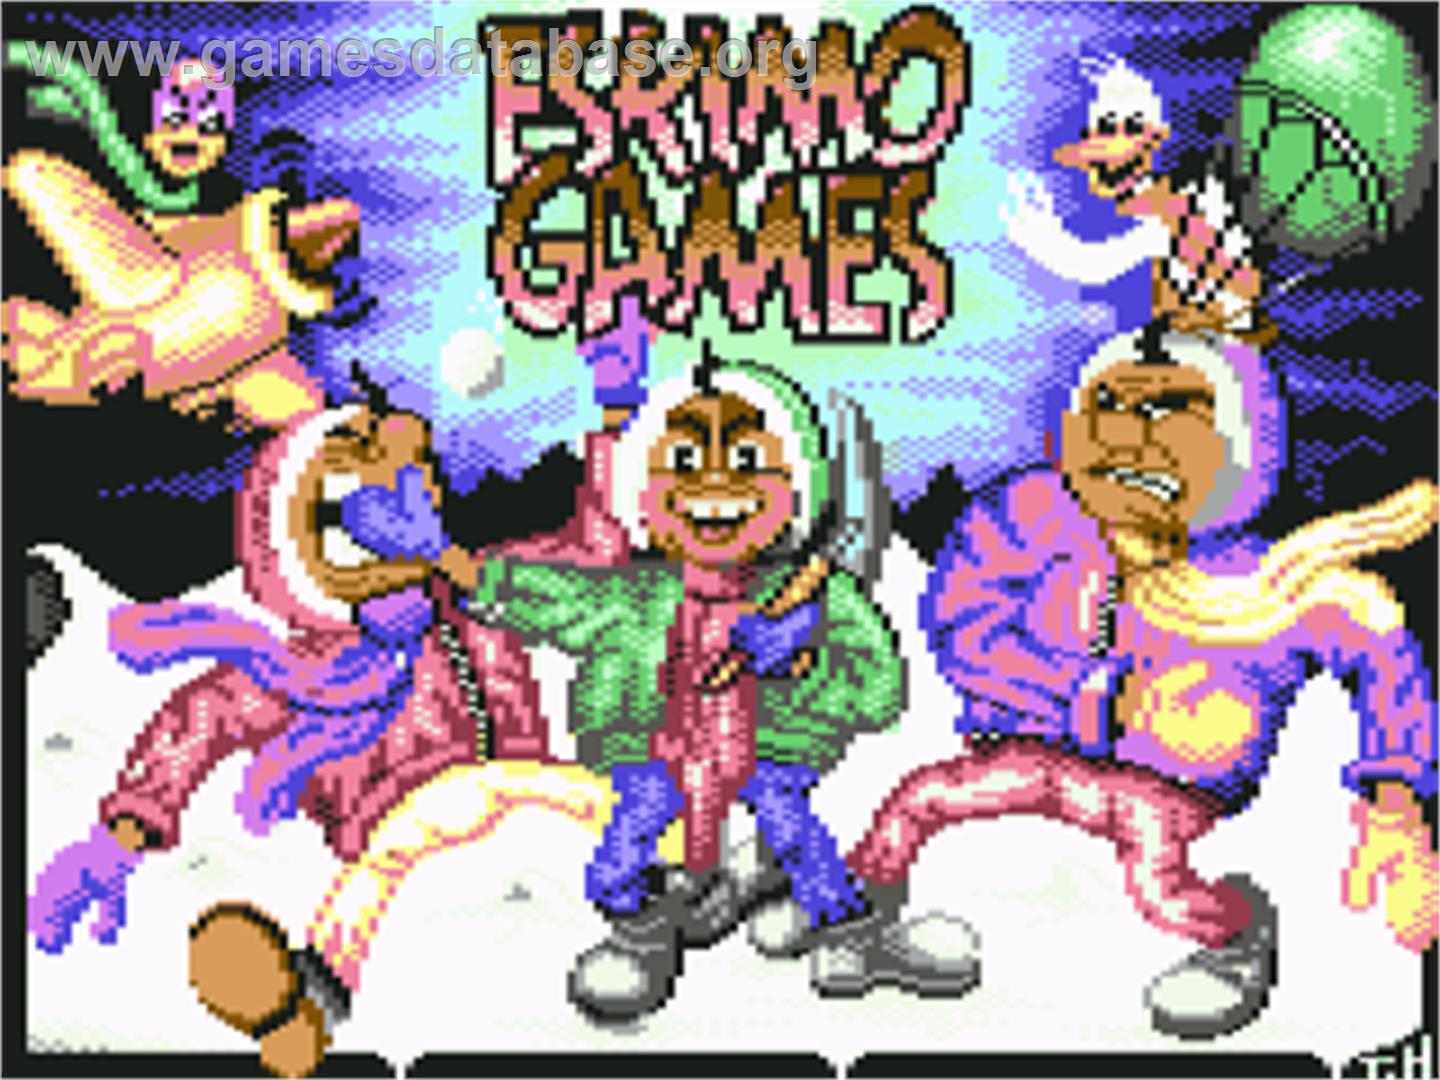 Eskimo Games - Commodore 64 - Artwork - Title Screen